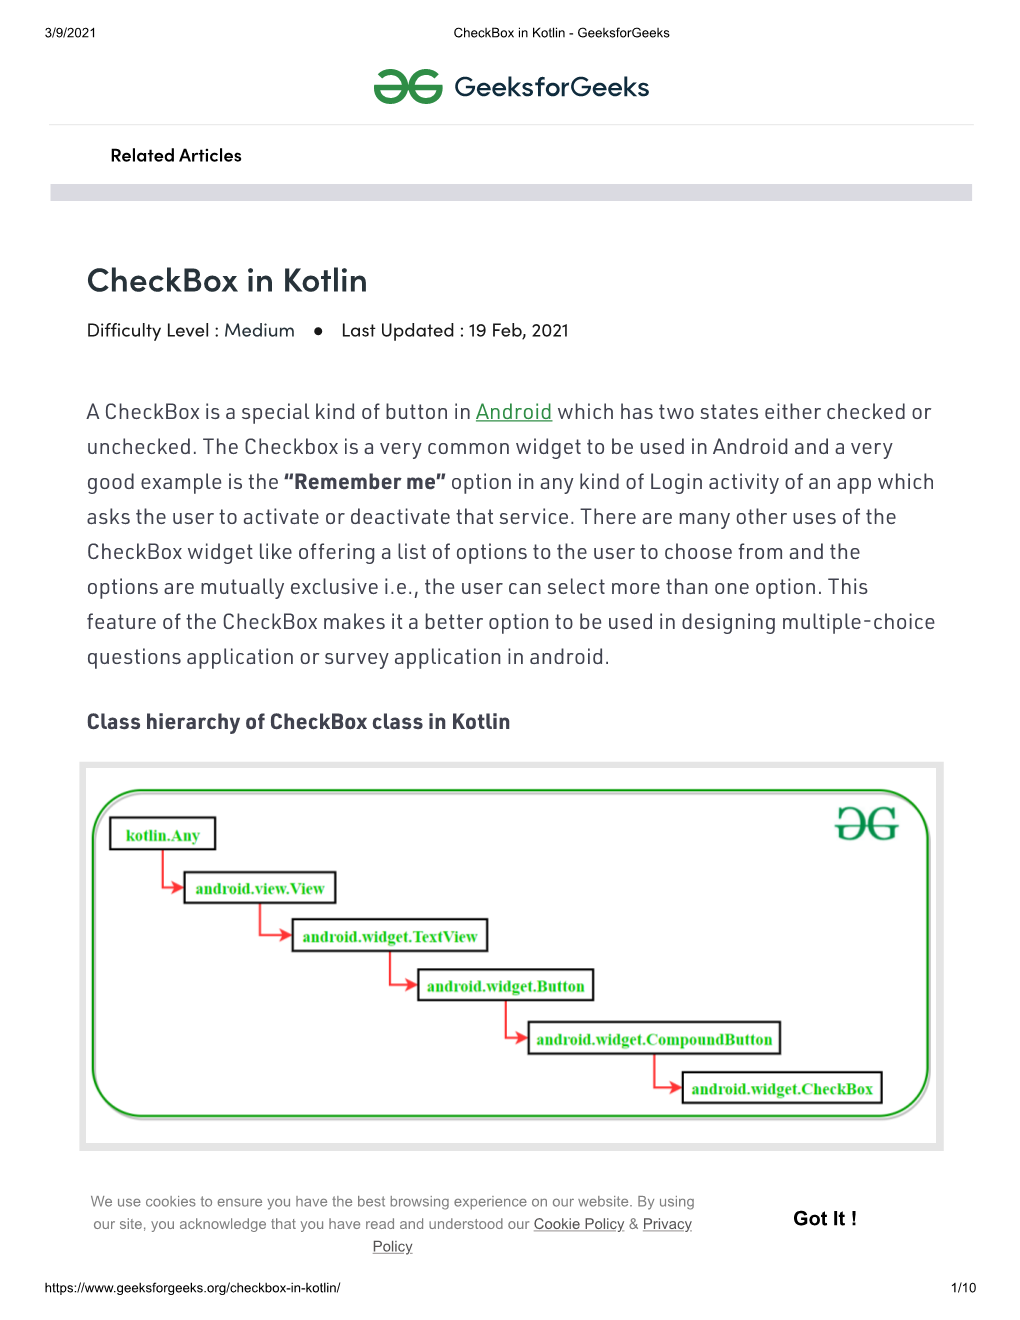 Checkbox in Kotlin - Geeksforgeeks